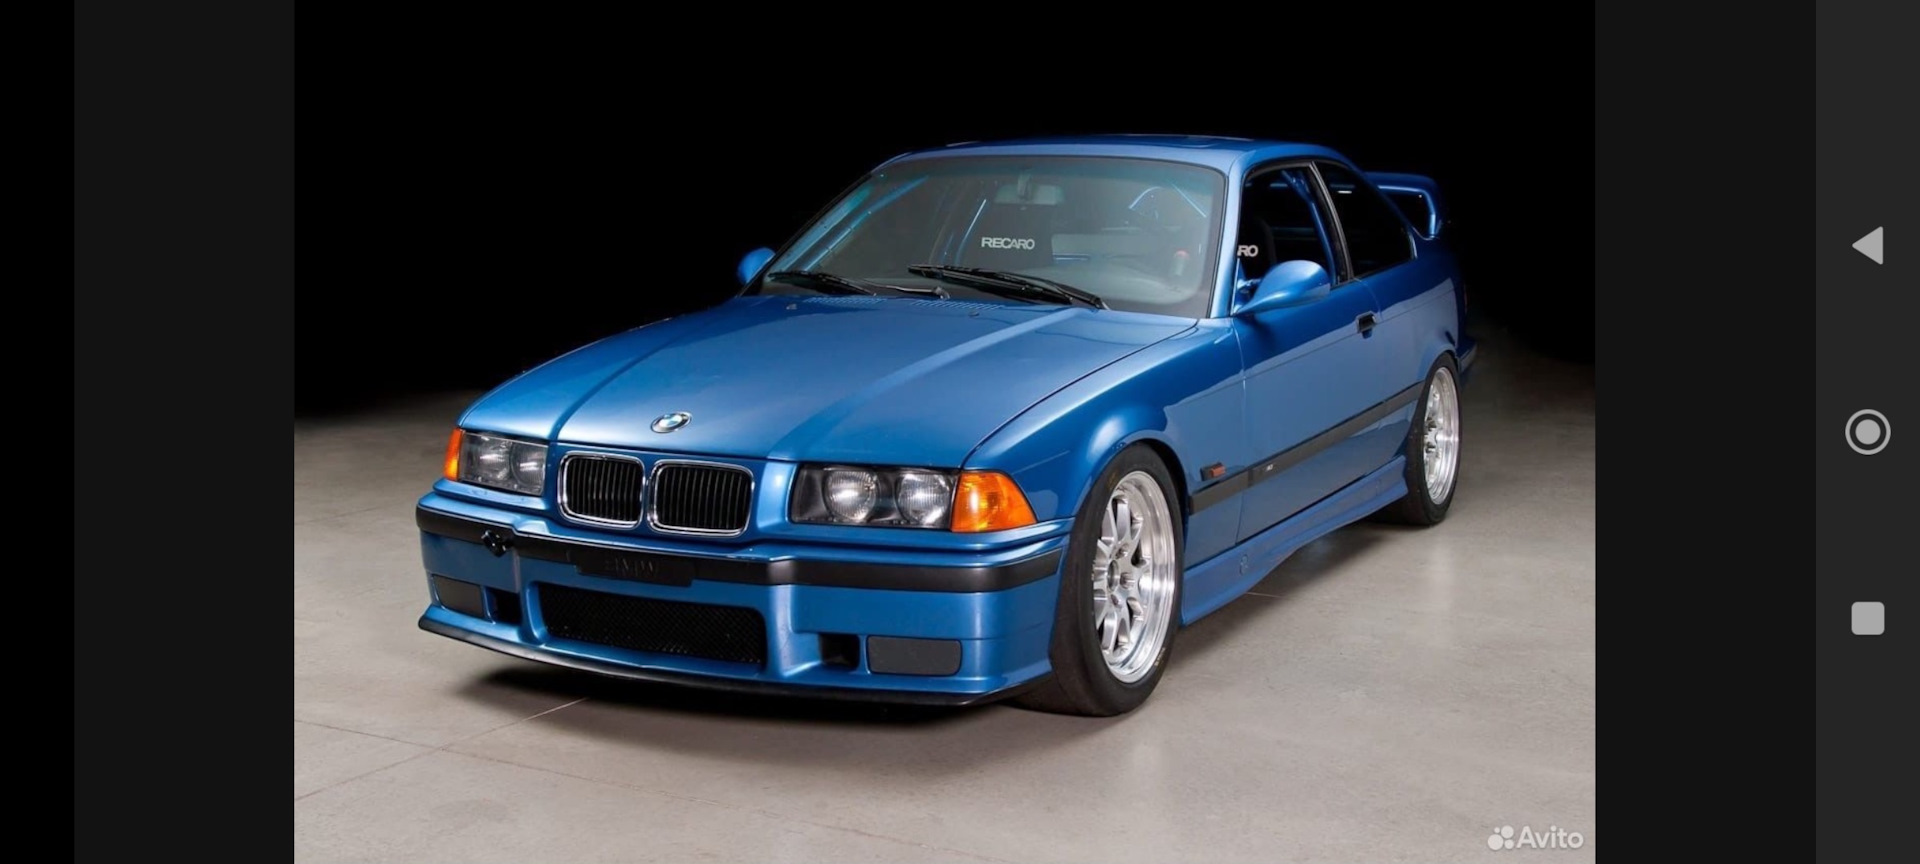 03 36 3. БМВ м3 e36. BMW e36 м3. BMW m3 1996. BMW m3 e35.